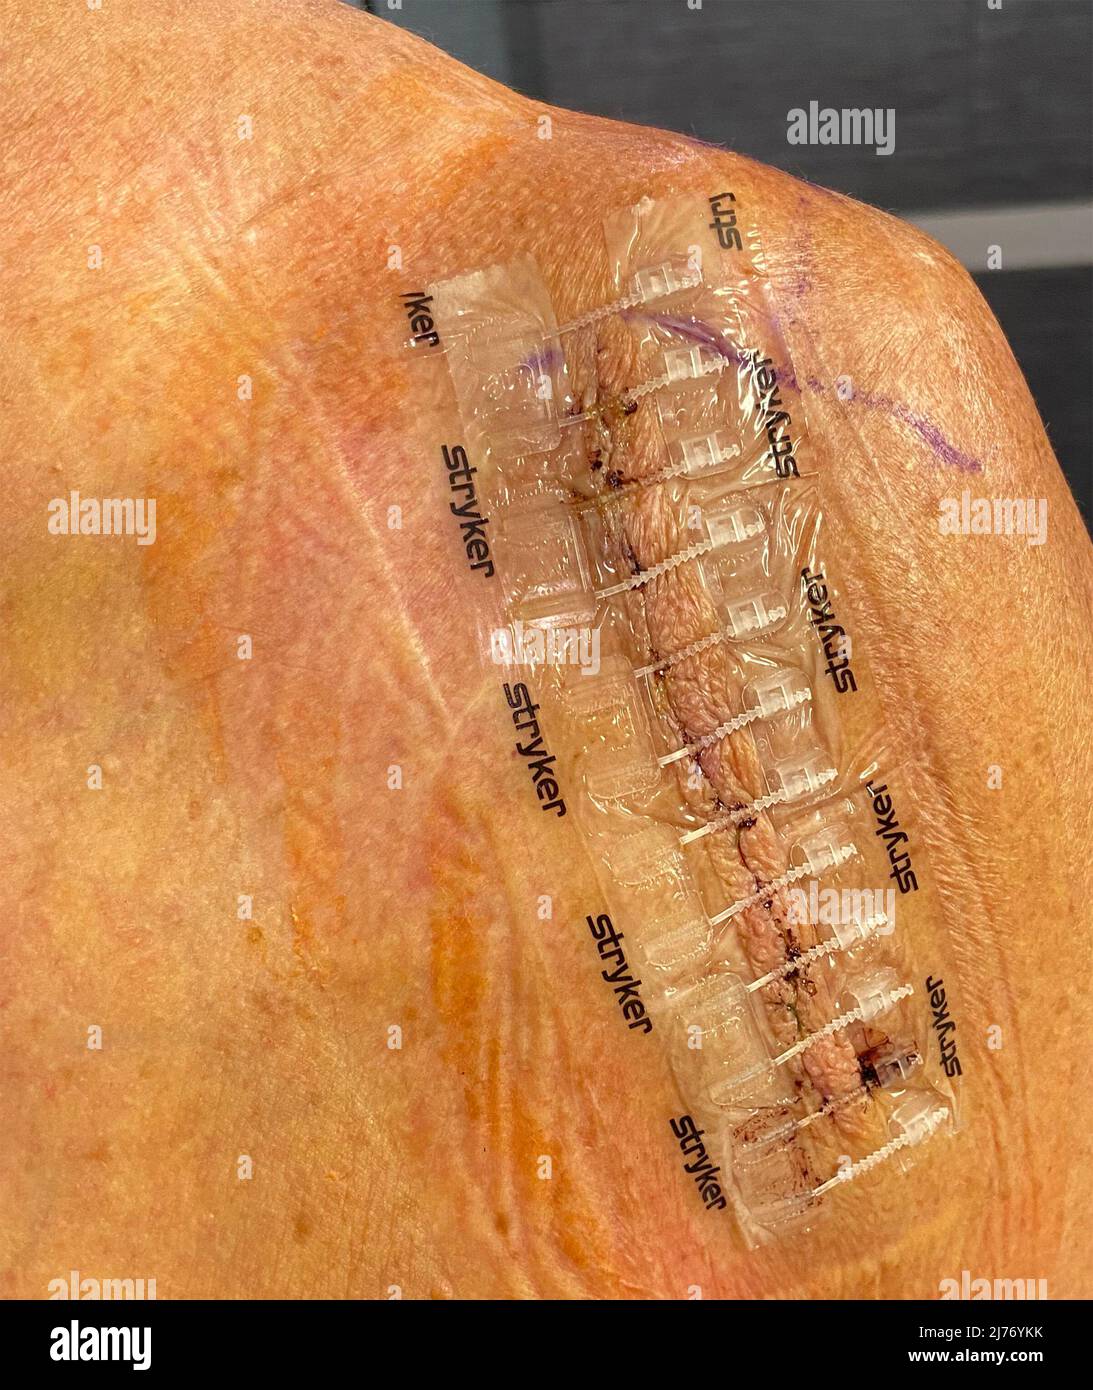 Une arthroplastie totale du genou chez la femme Banque D'Images